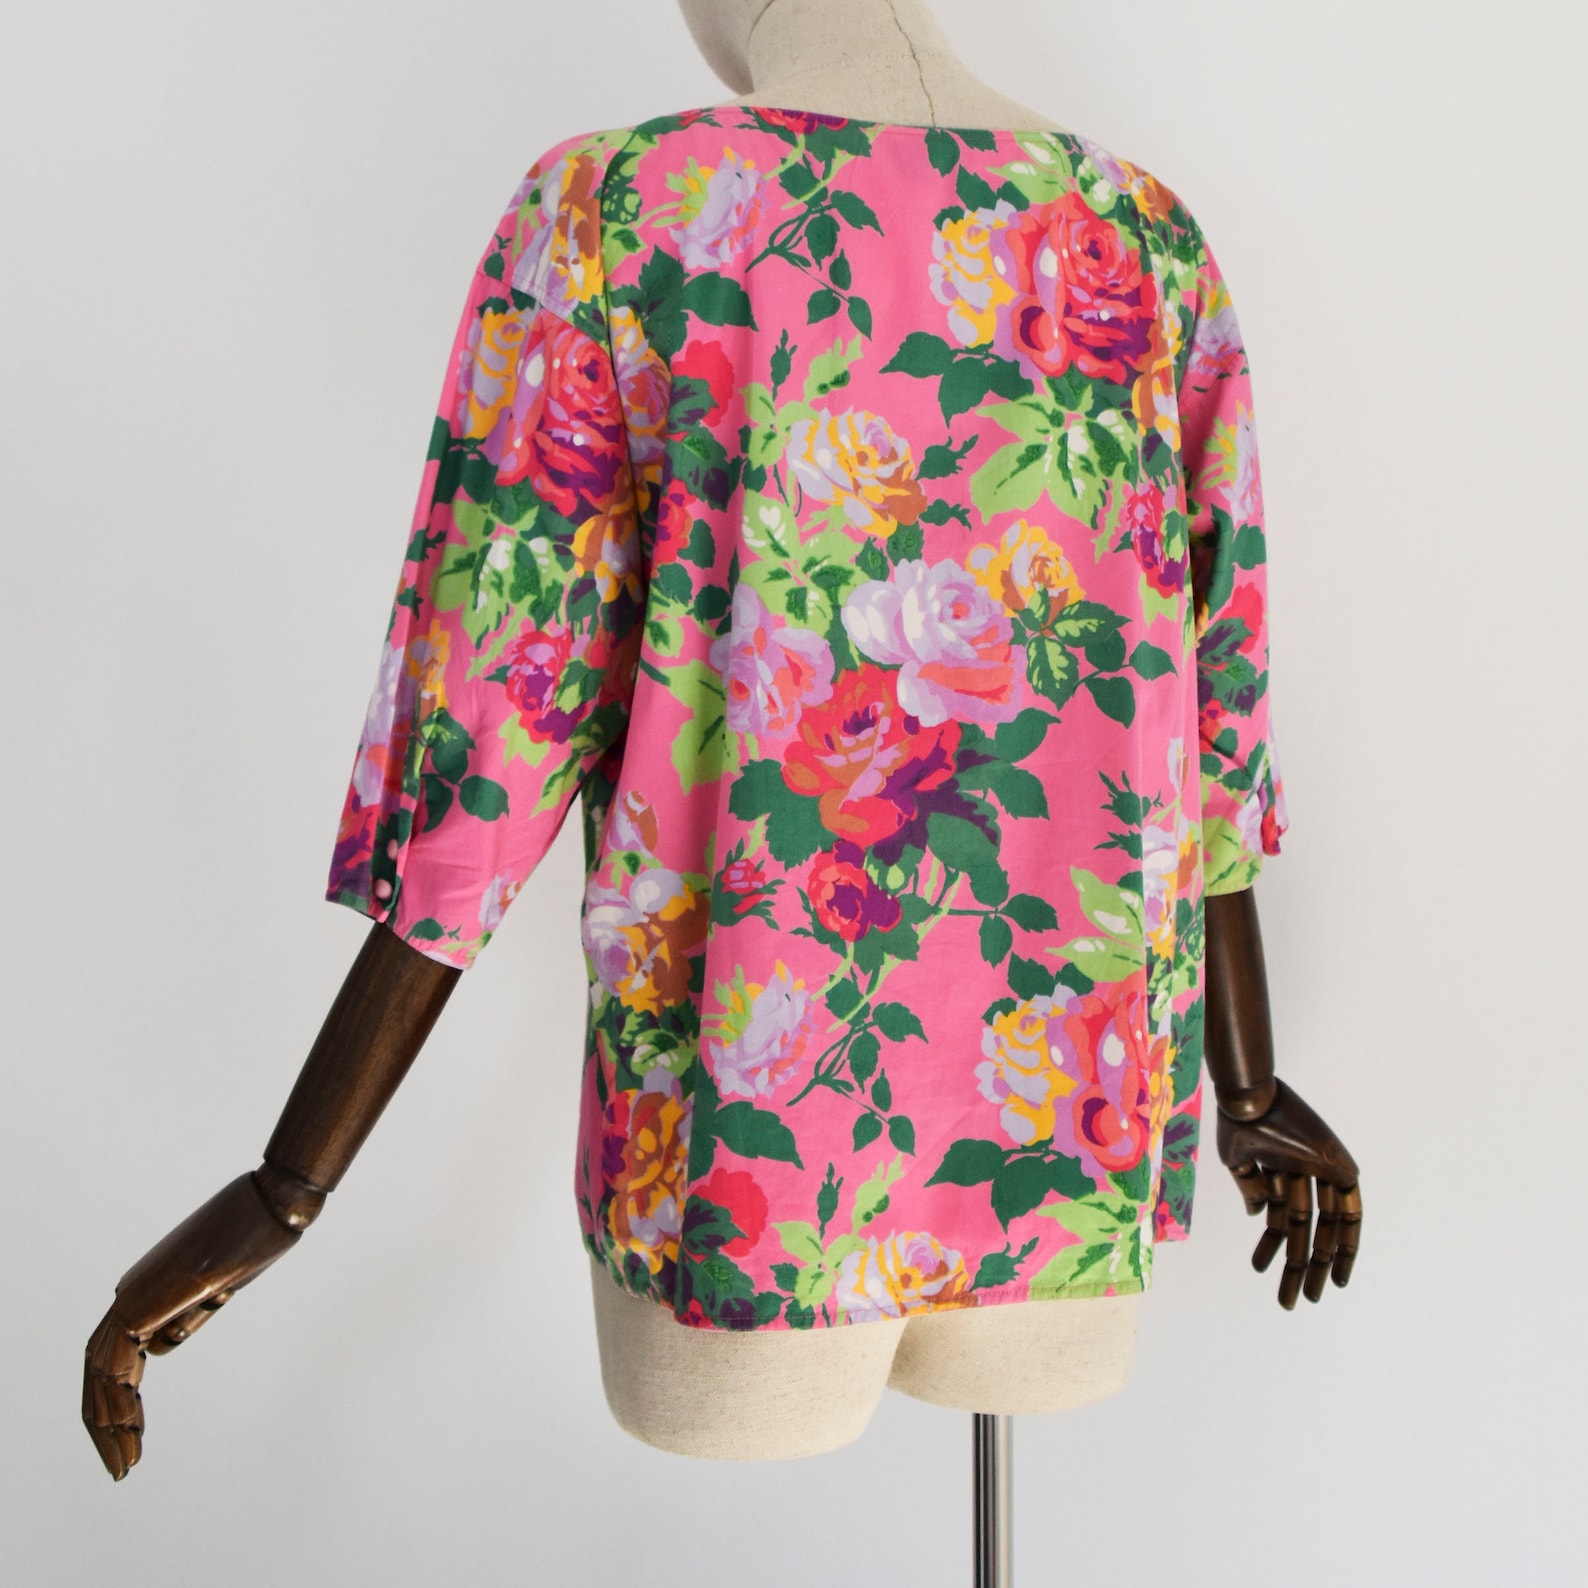 EMANUEL UNGARO blouse vintage 1990s cotton floral print | Etsy